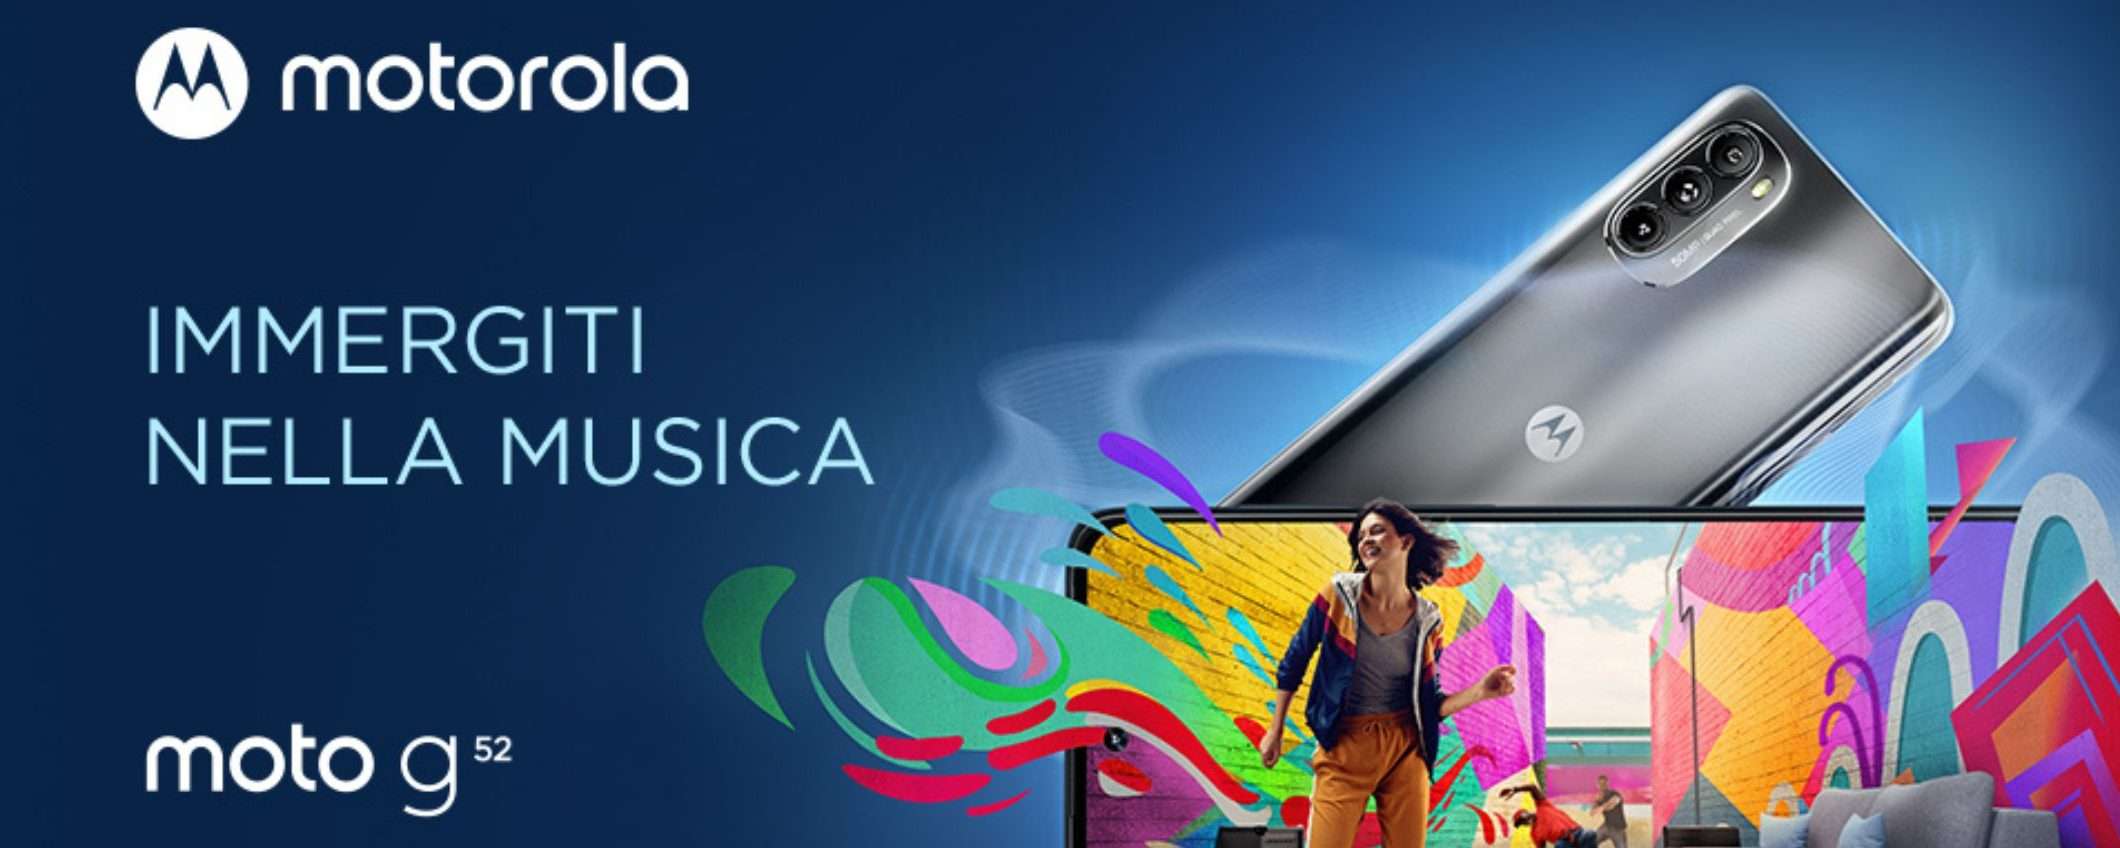 Motorola Moto g52: smartphone eccezionale in offerta a meno di 200 euro